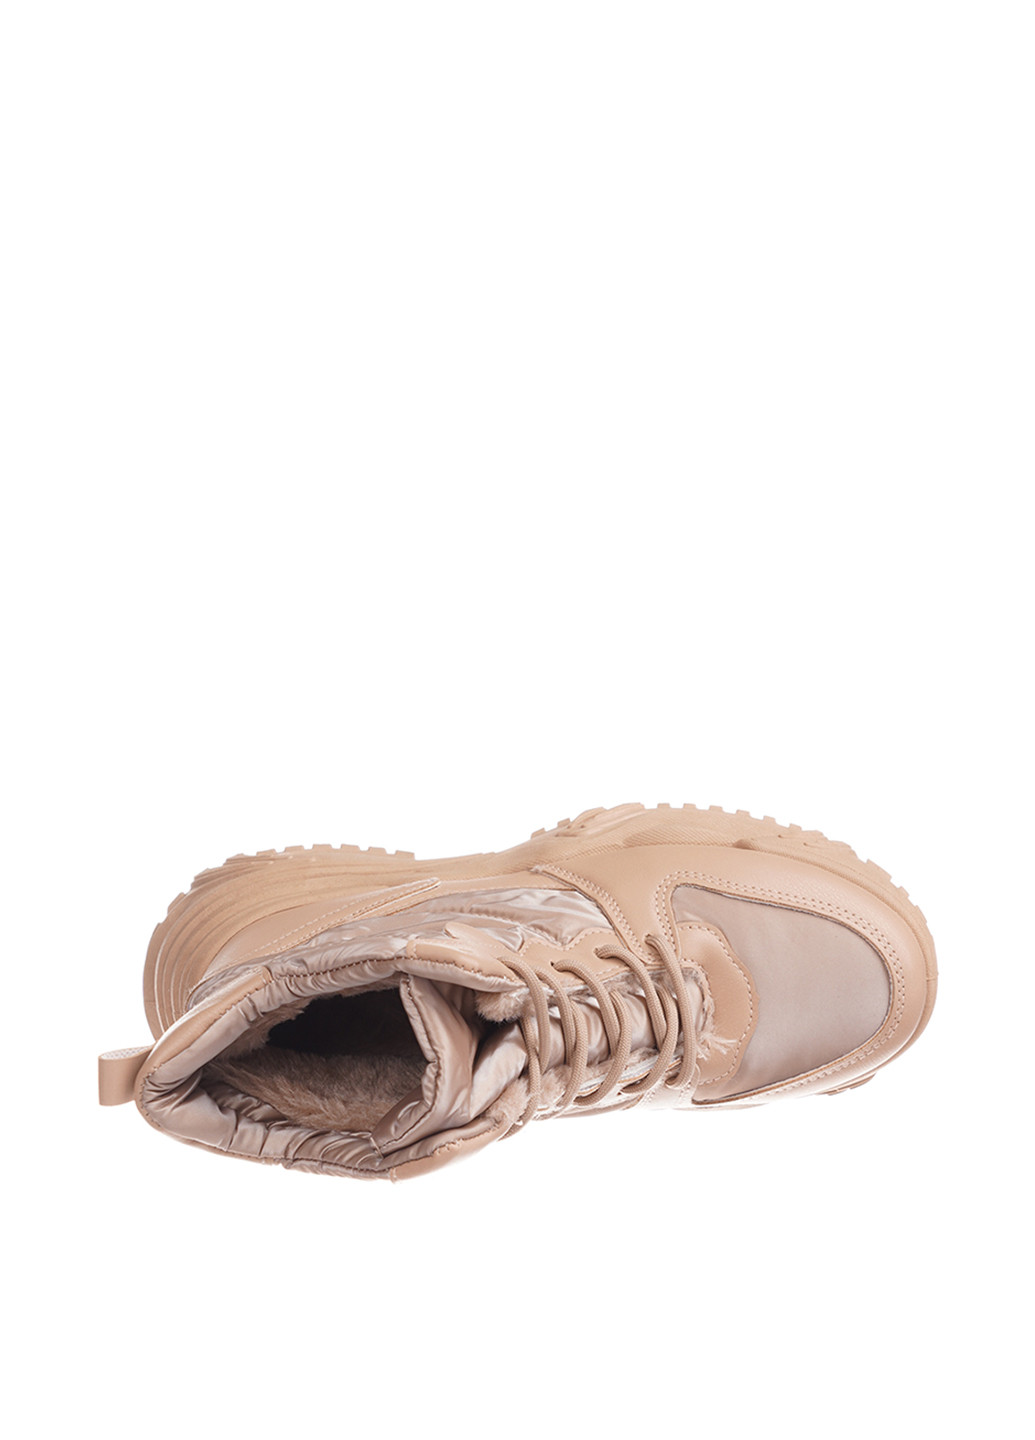 Зимние ботинки Sopra без декора из искусственной кожи, тканевые